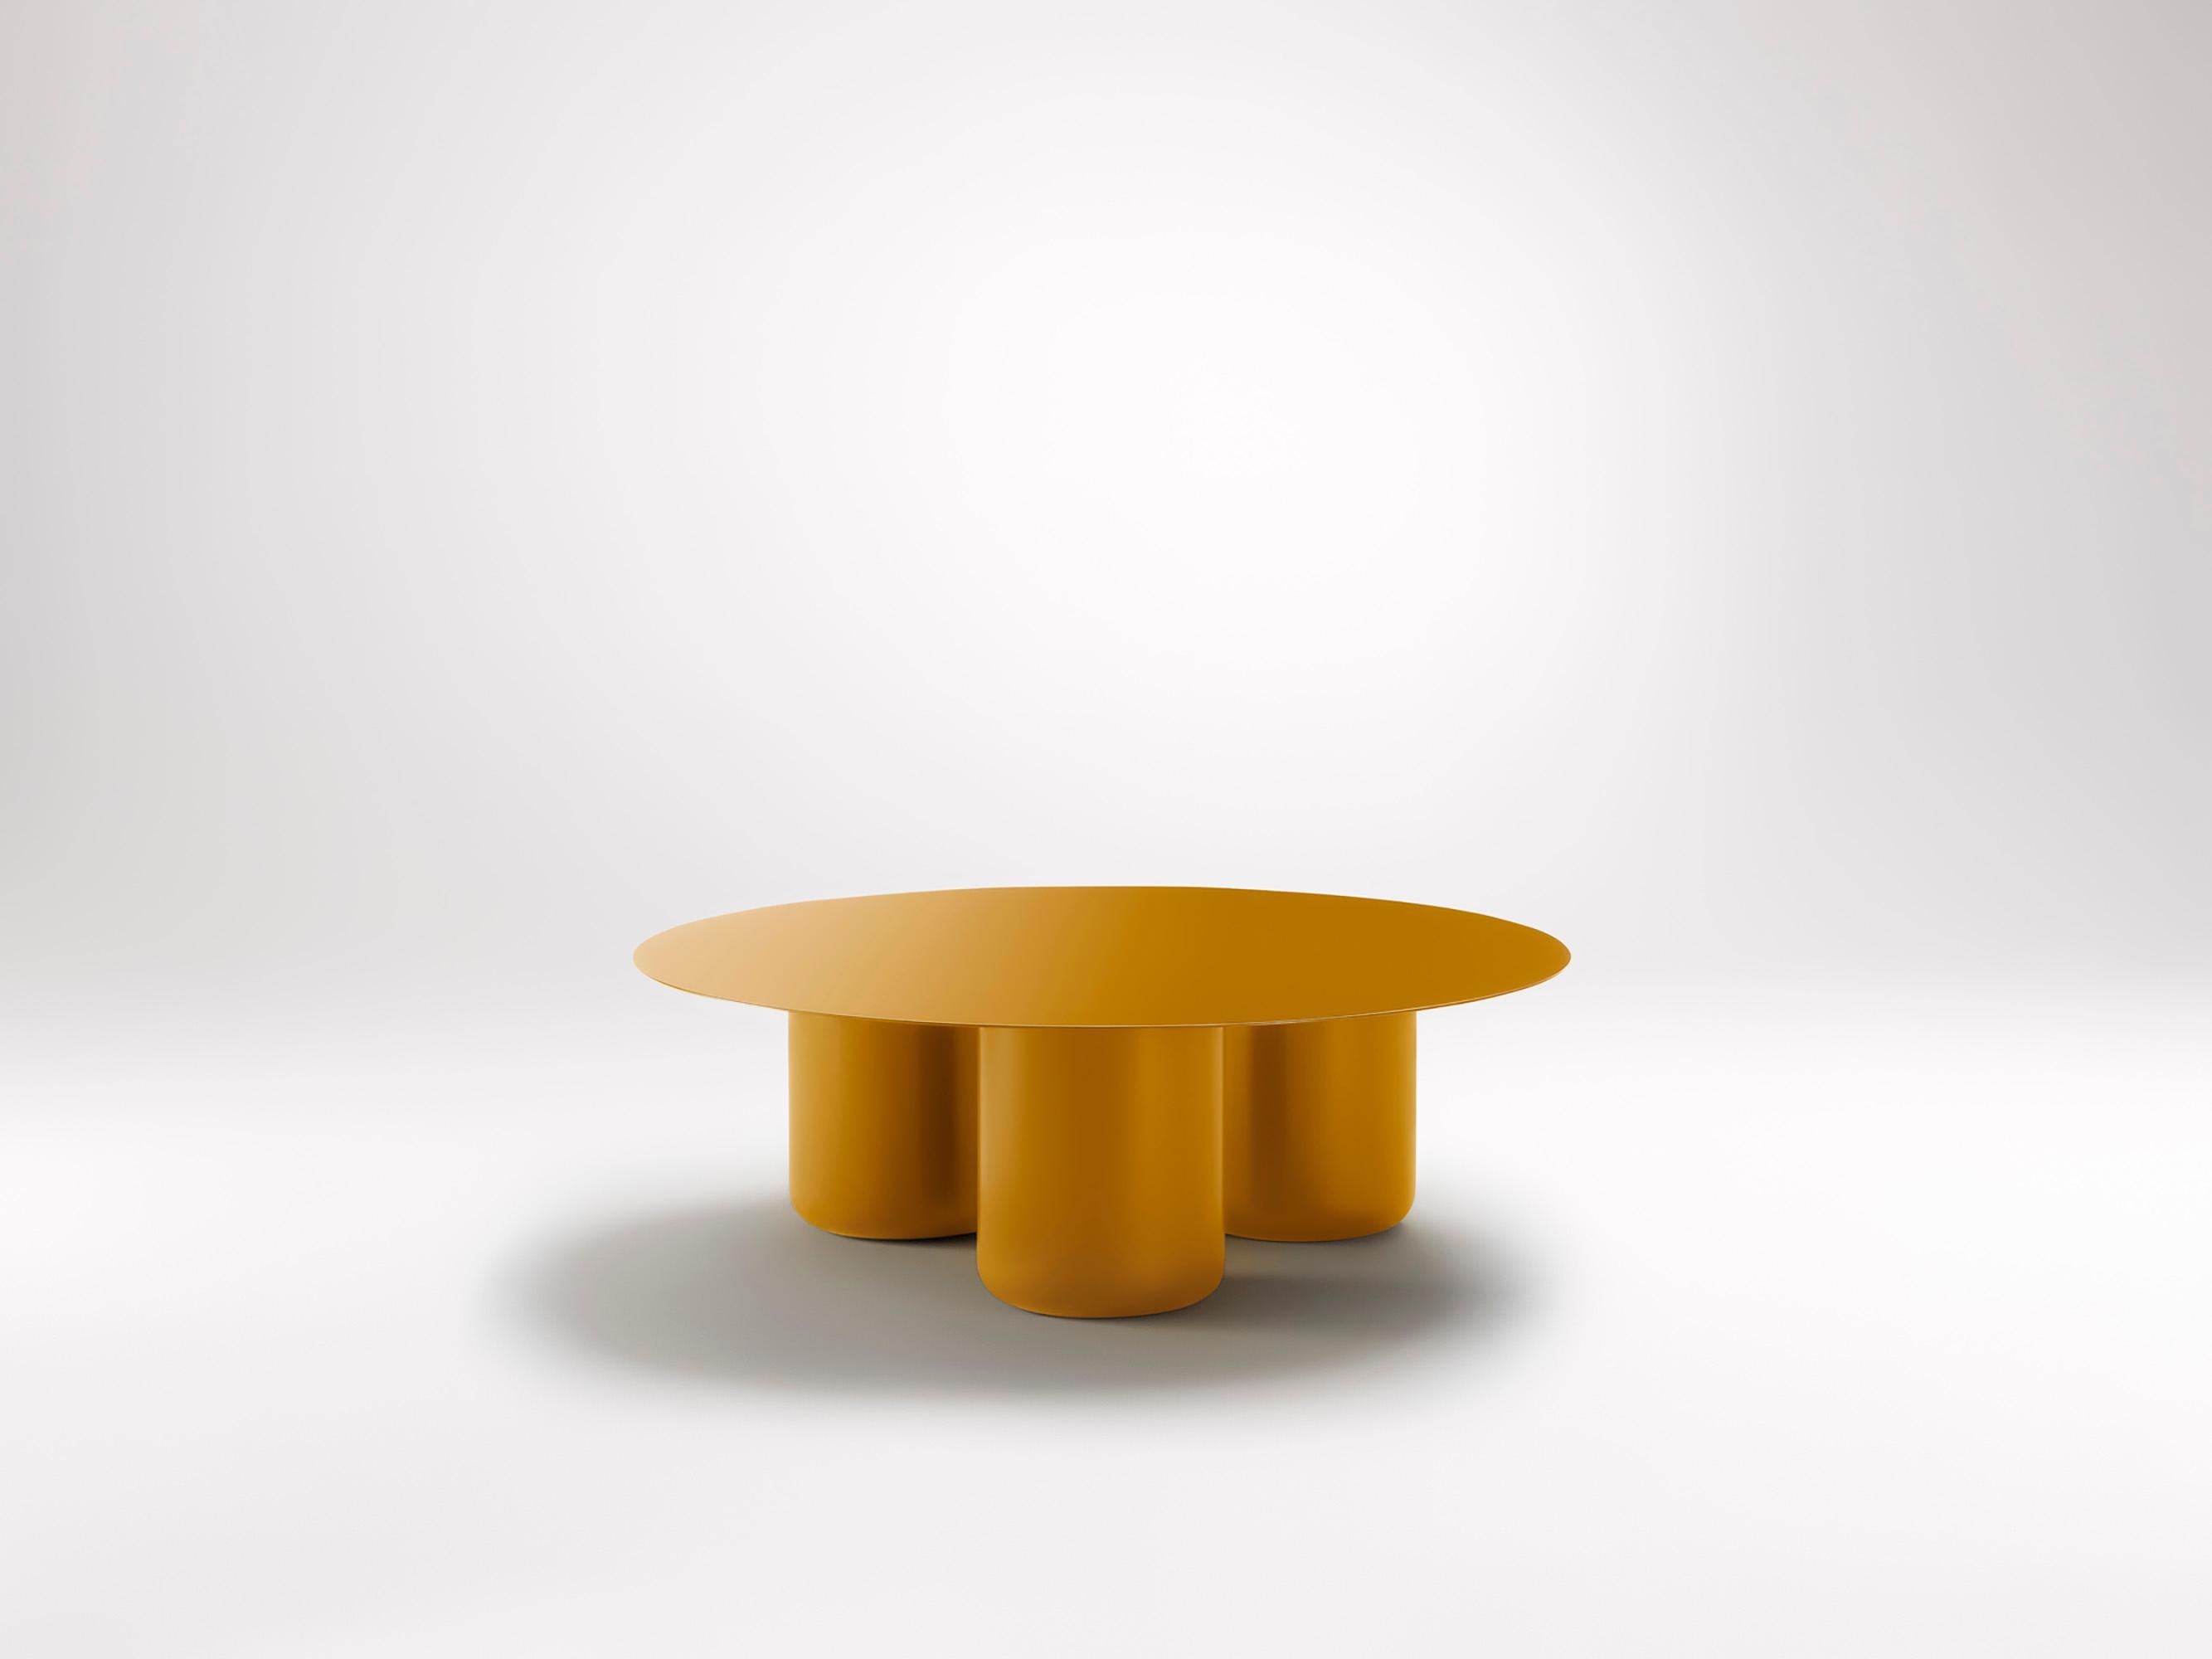 Sonnengelber runder Tisch von Coco Flip
Abmessungen: D 100 x H 32 / 36 / 40 / 42 cm
MATERIALIEN: Baustahl, pulverbeschichtet mit Zinkgrundierung. 
Gewicht: 34 kg

Coco Flip ist ein Studio für Möbel- und Beleuchtungsdesign in Melbourne, das von uns,